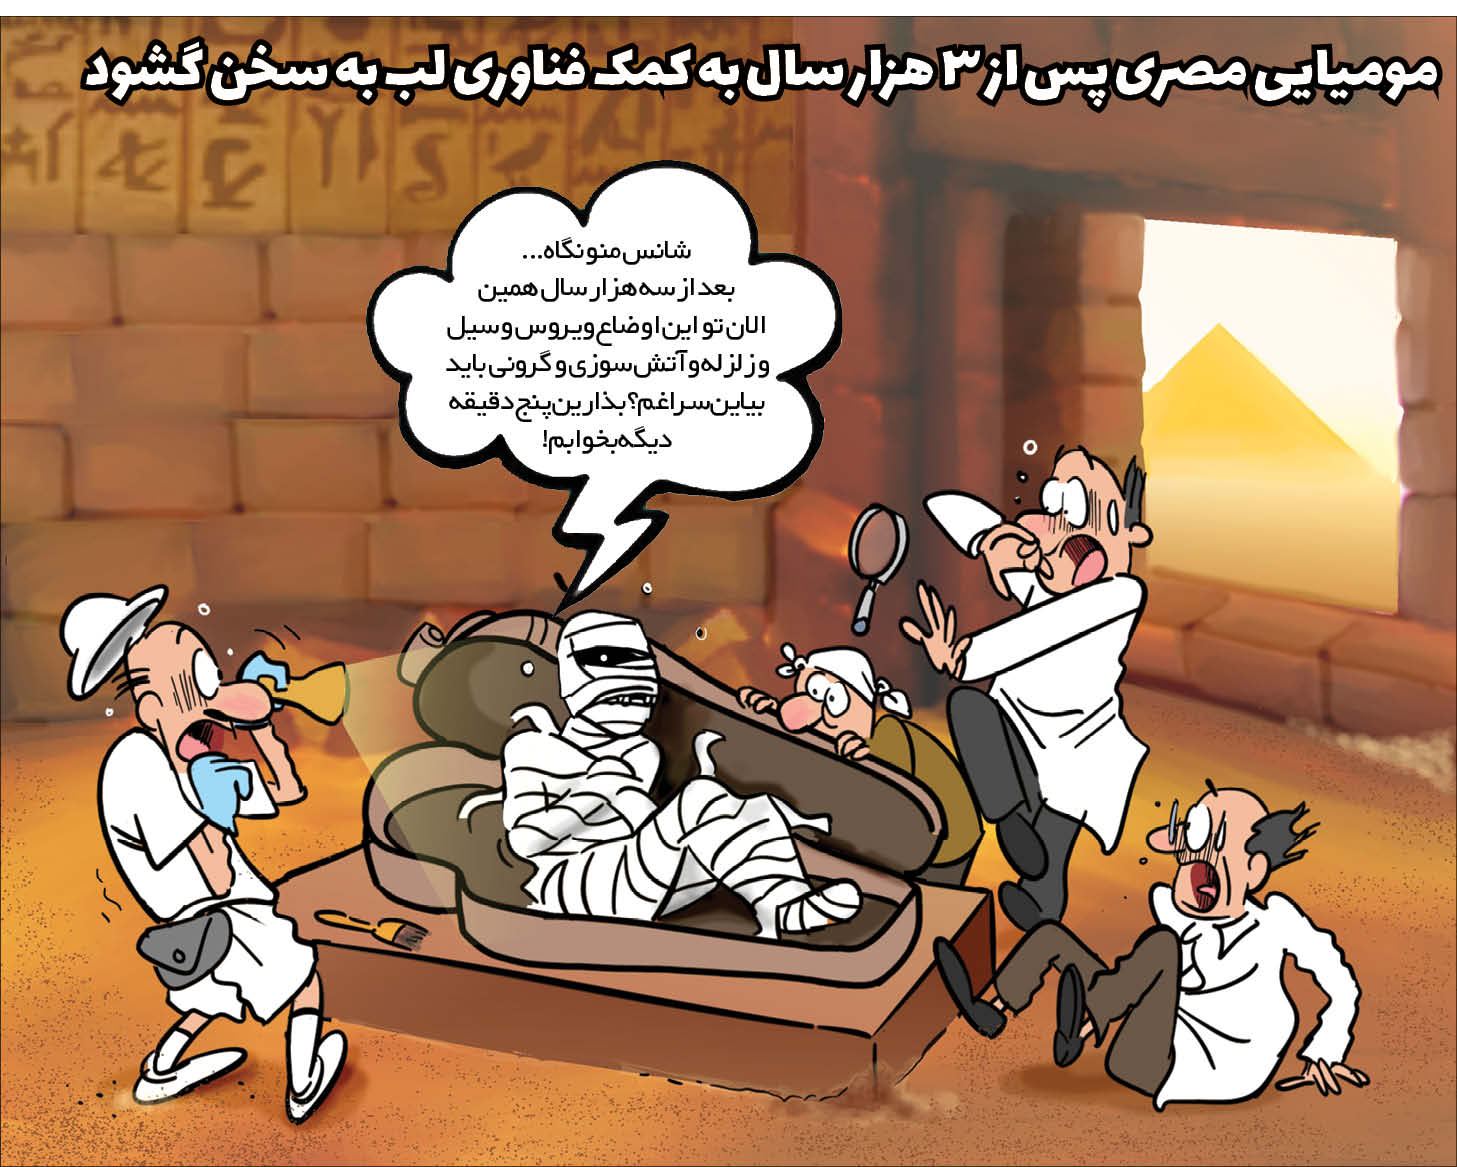 کارتونیست:  سعید مرادی